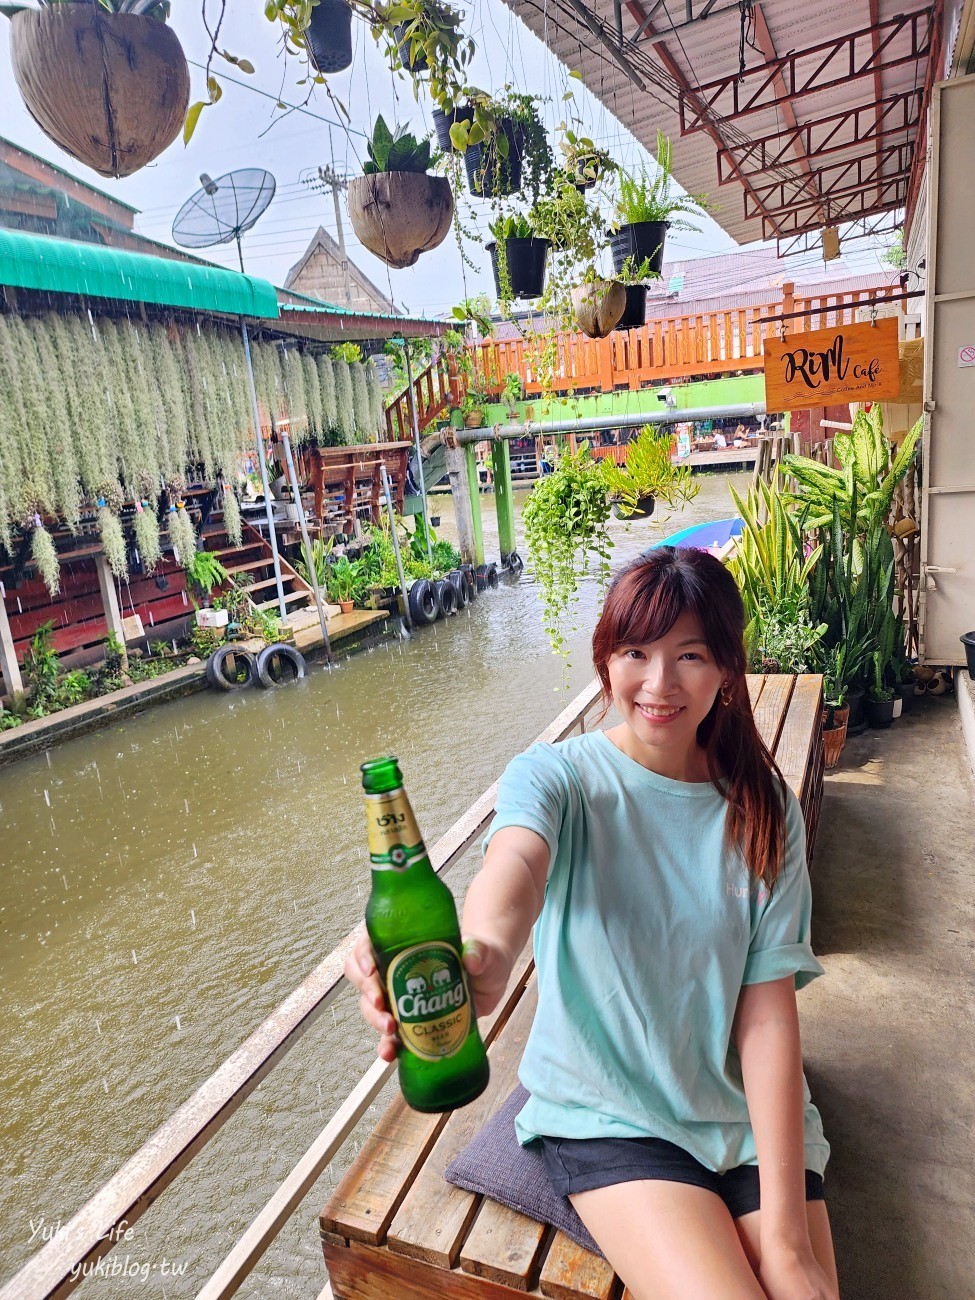 曼谷必玩景點推薦【丹嫩莎朵水上市場】搭手搖船太好玩，曼谷的水上市場推薦這裡！ - yukiblog.tw